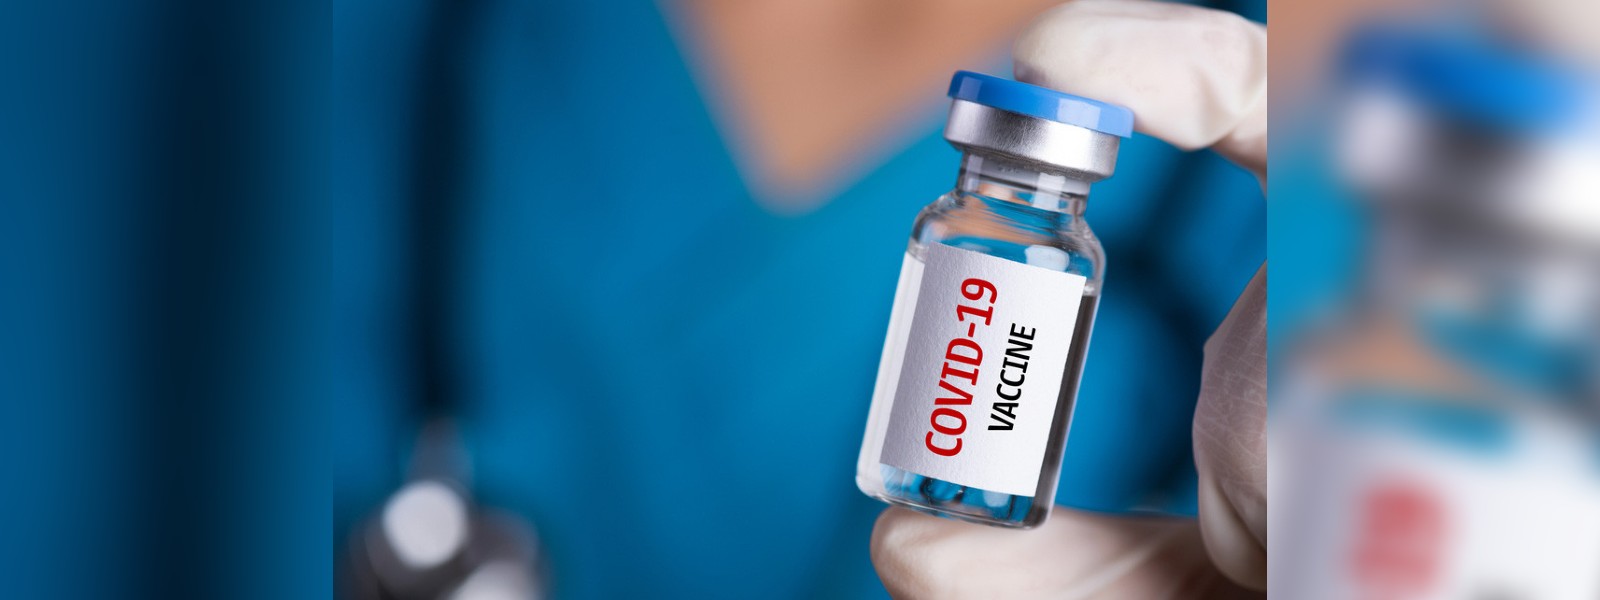 Is Sri Lanka prepared to obtain COVID-19 vaccines?